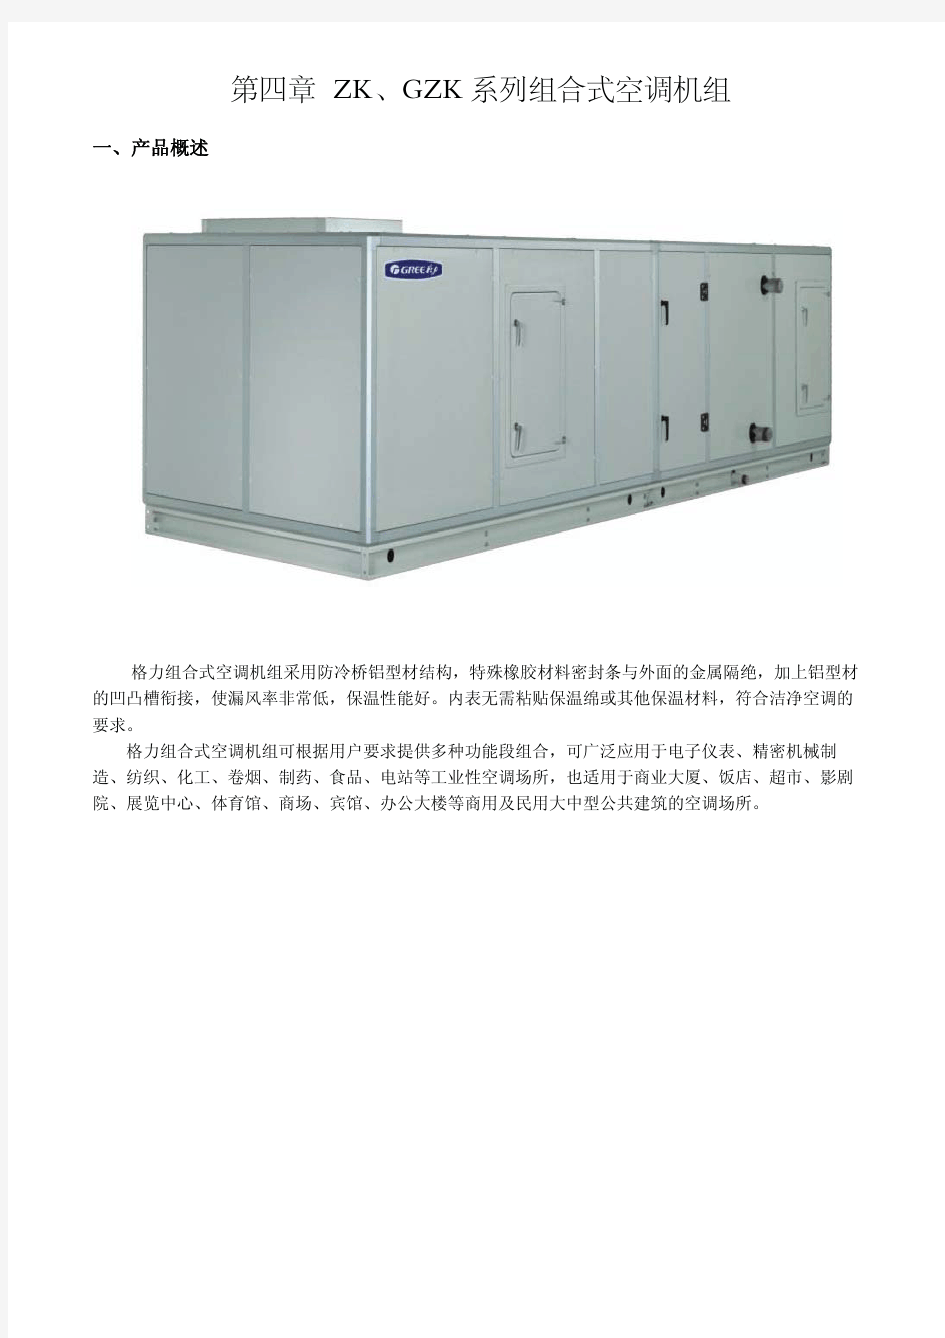 zk、gzk系列组合式空调机组设计选型手册